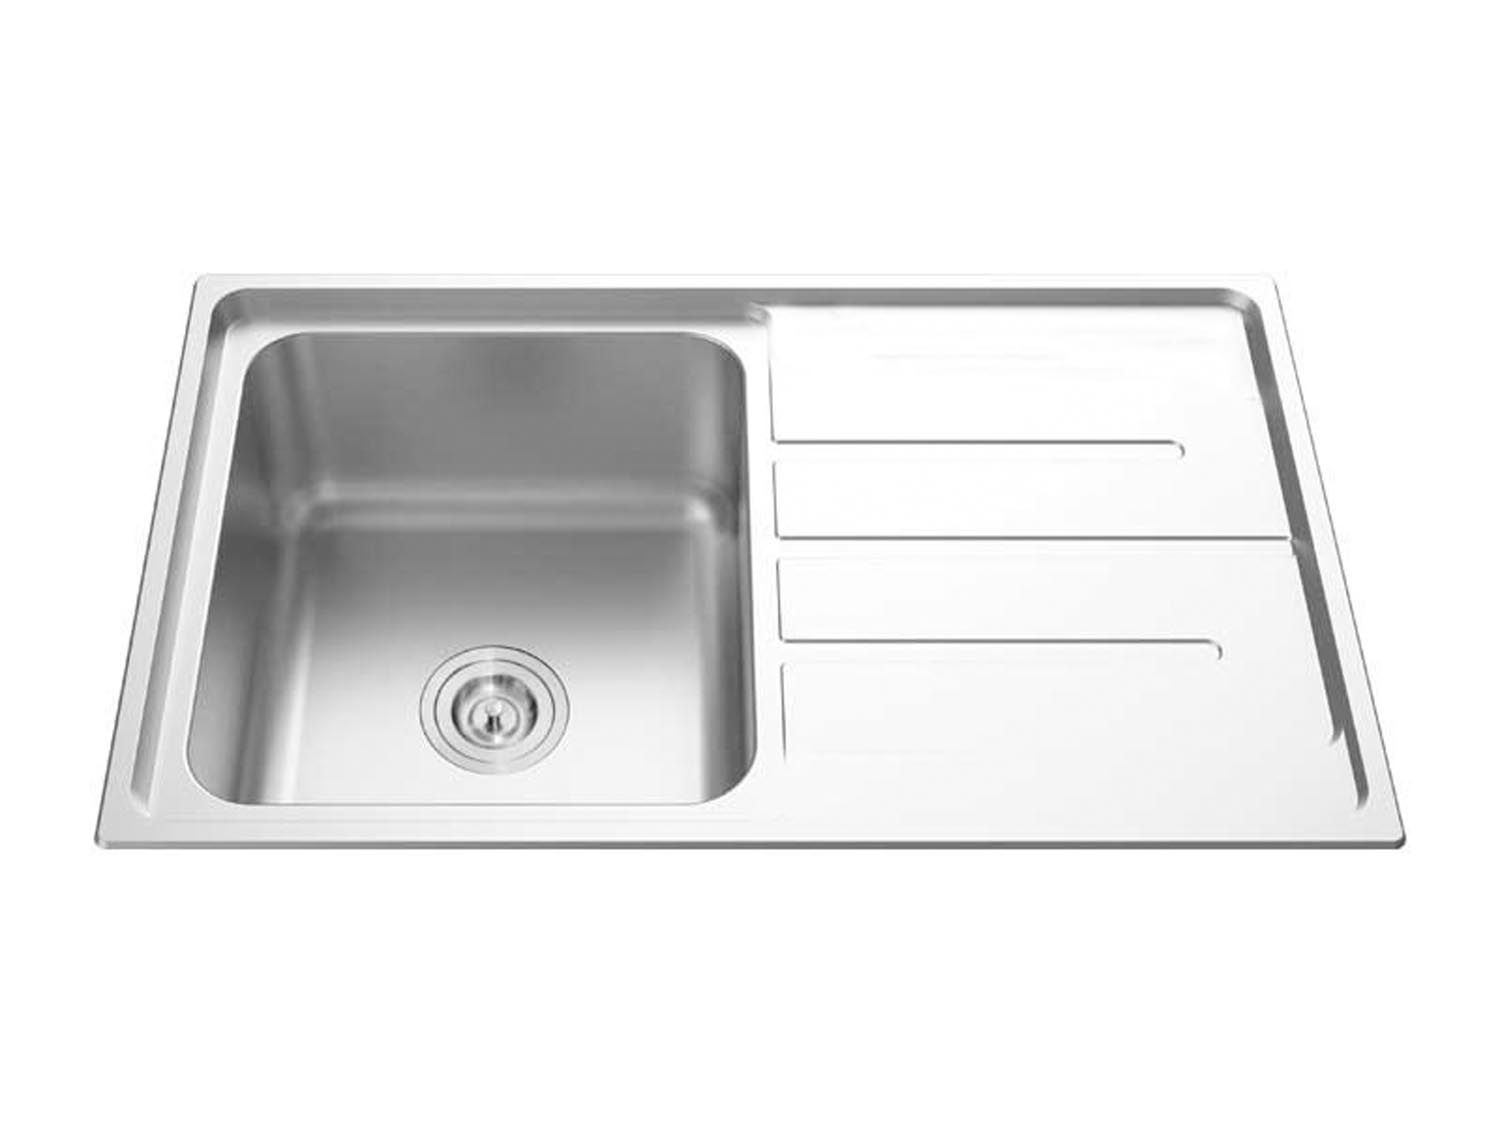 800mm white kitchen sink